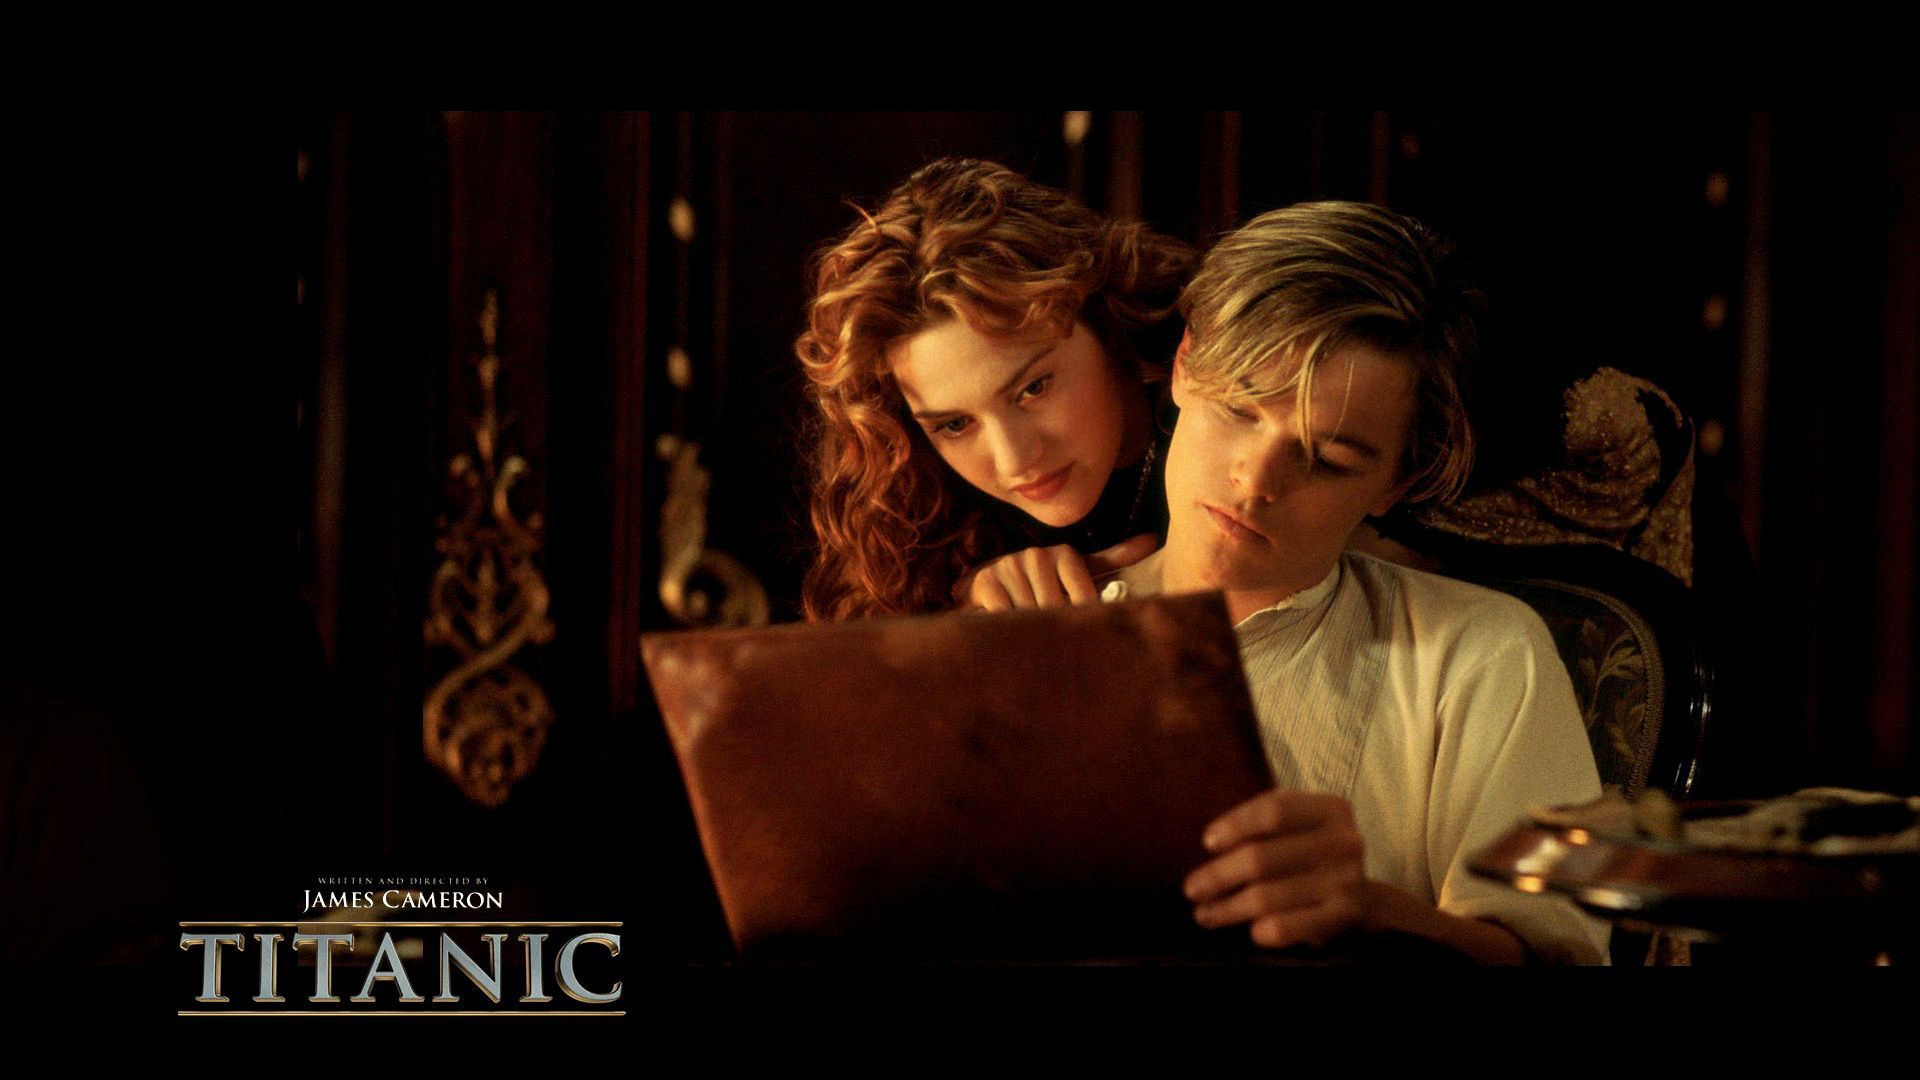 Titanic Romantic Scene Hd Wallpaper - Titanic Wallpaper Jack And Rose , HD Wallpaper & Backgrounds